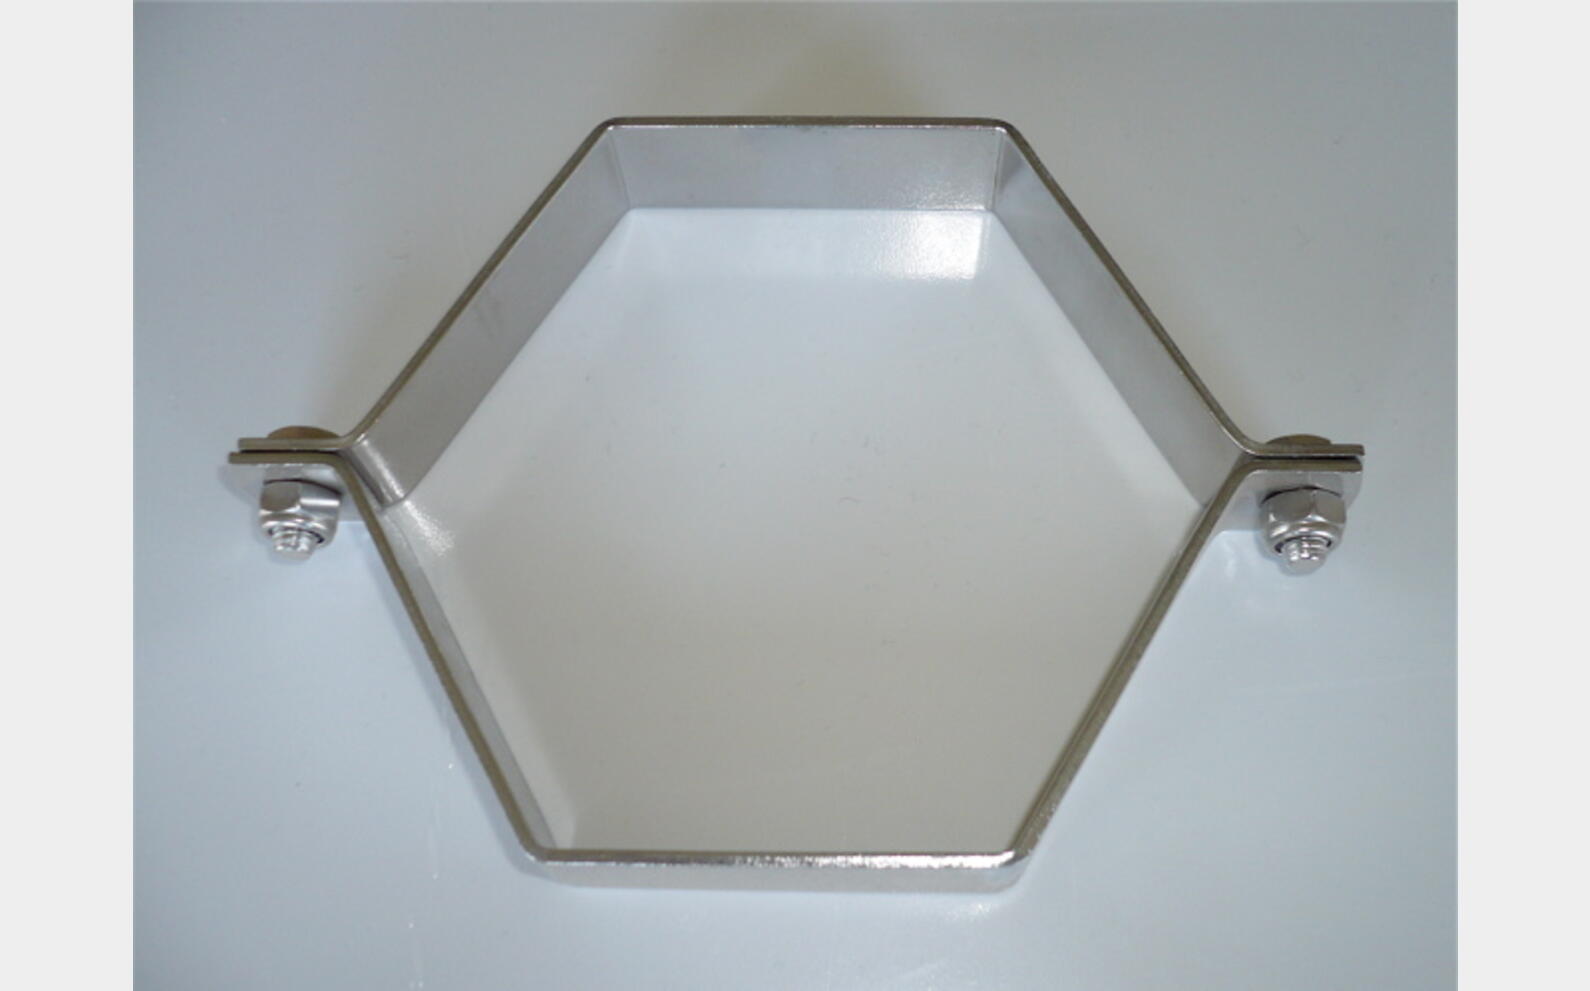 Collier hexagonal 2 piéces INOX - Porte tube